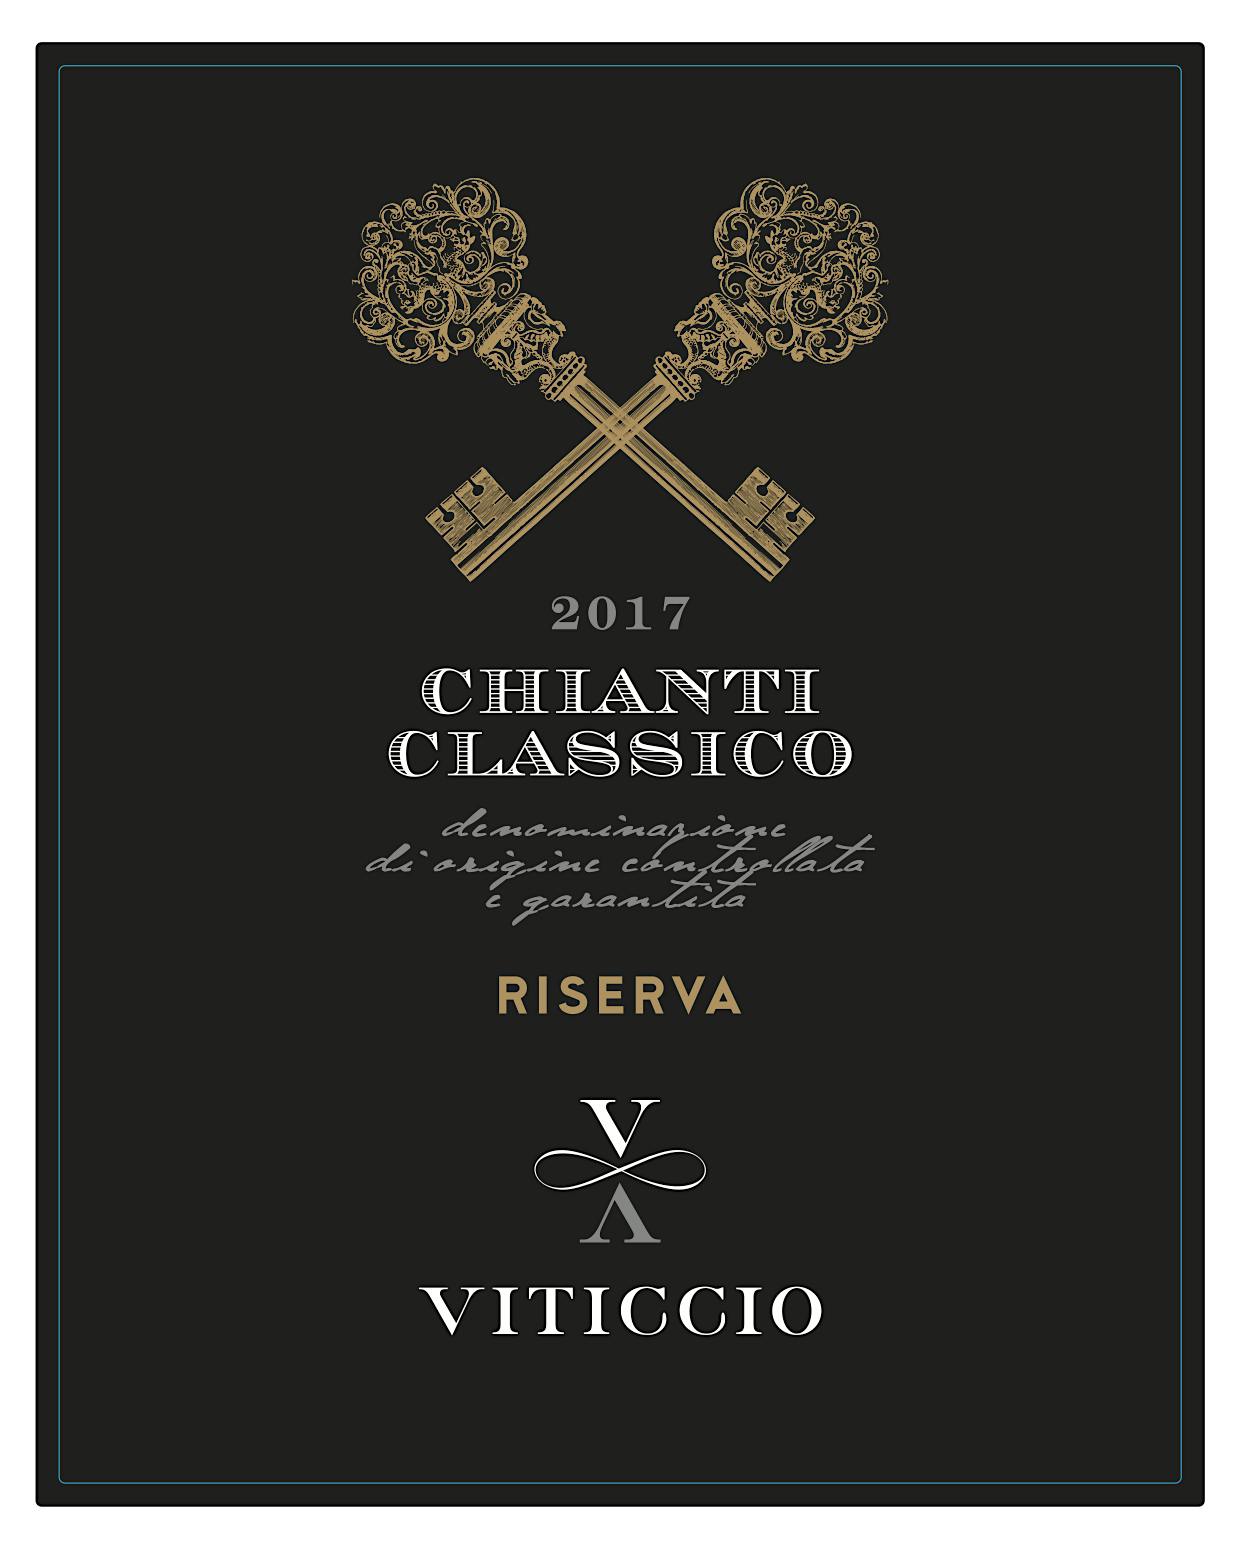 Label for Viticcio